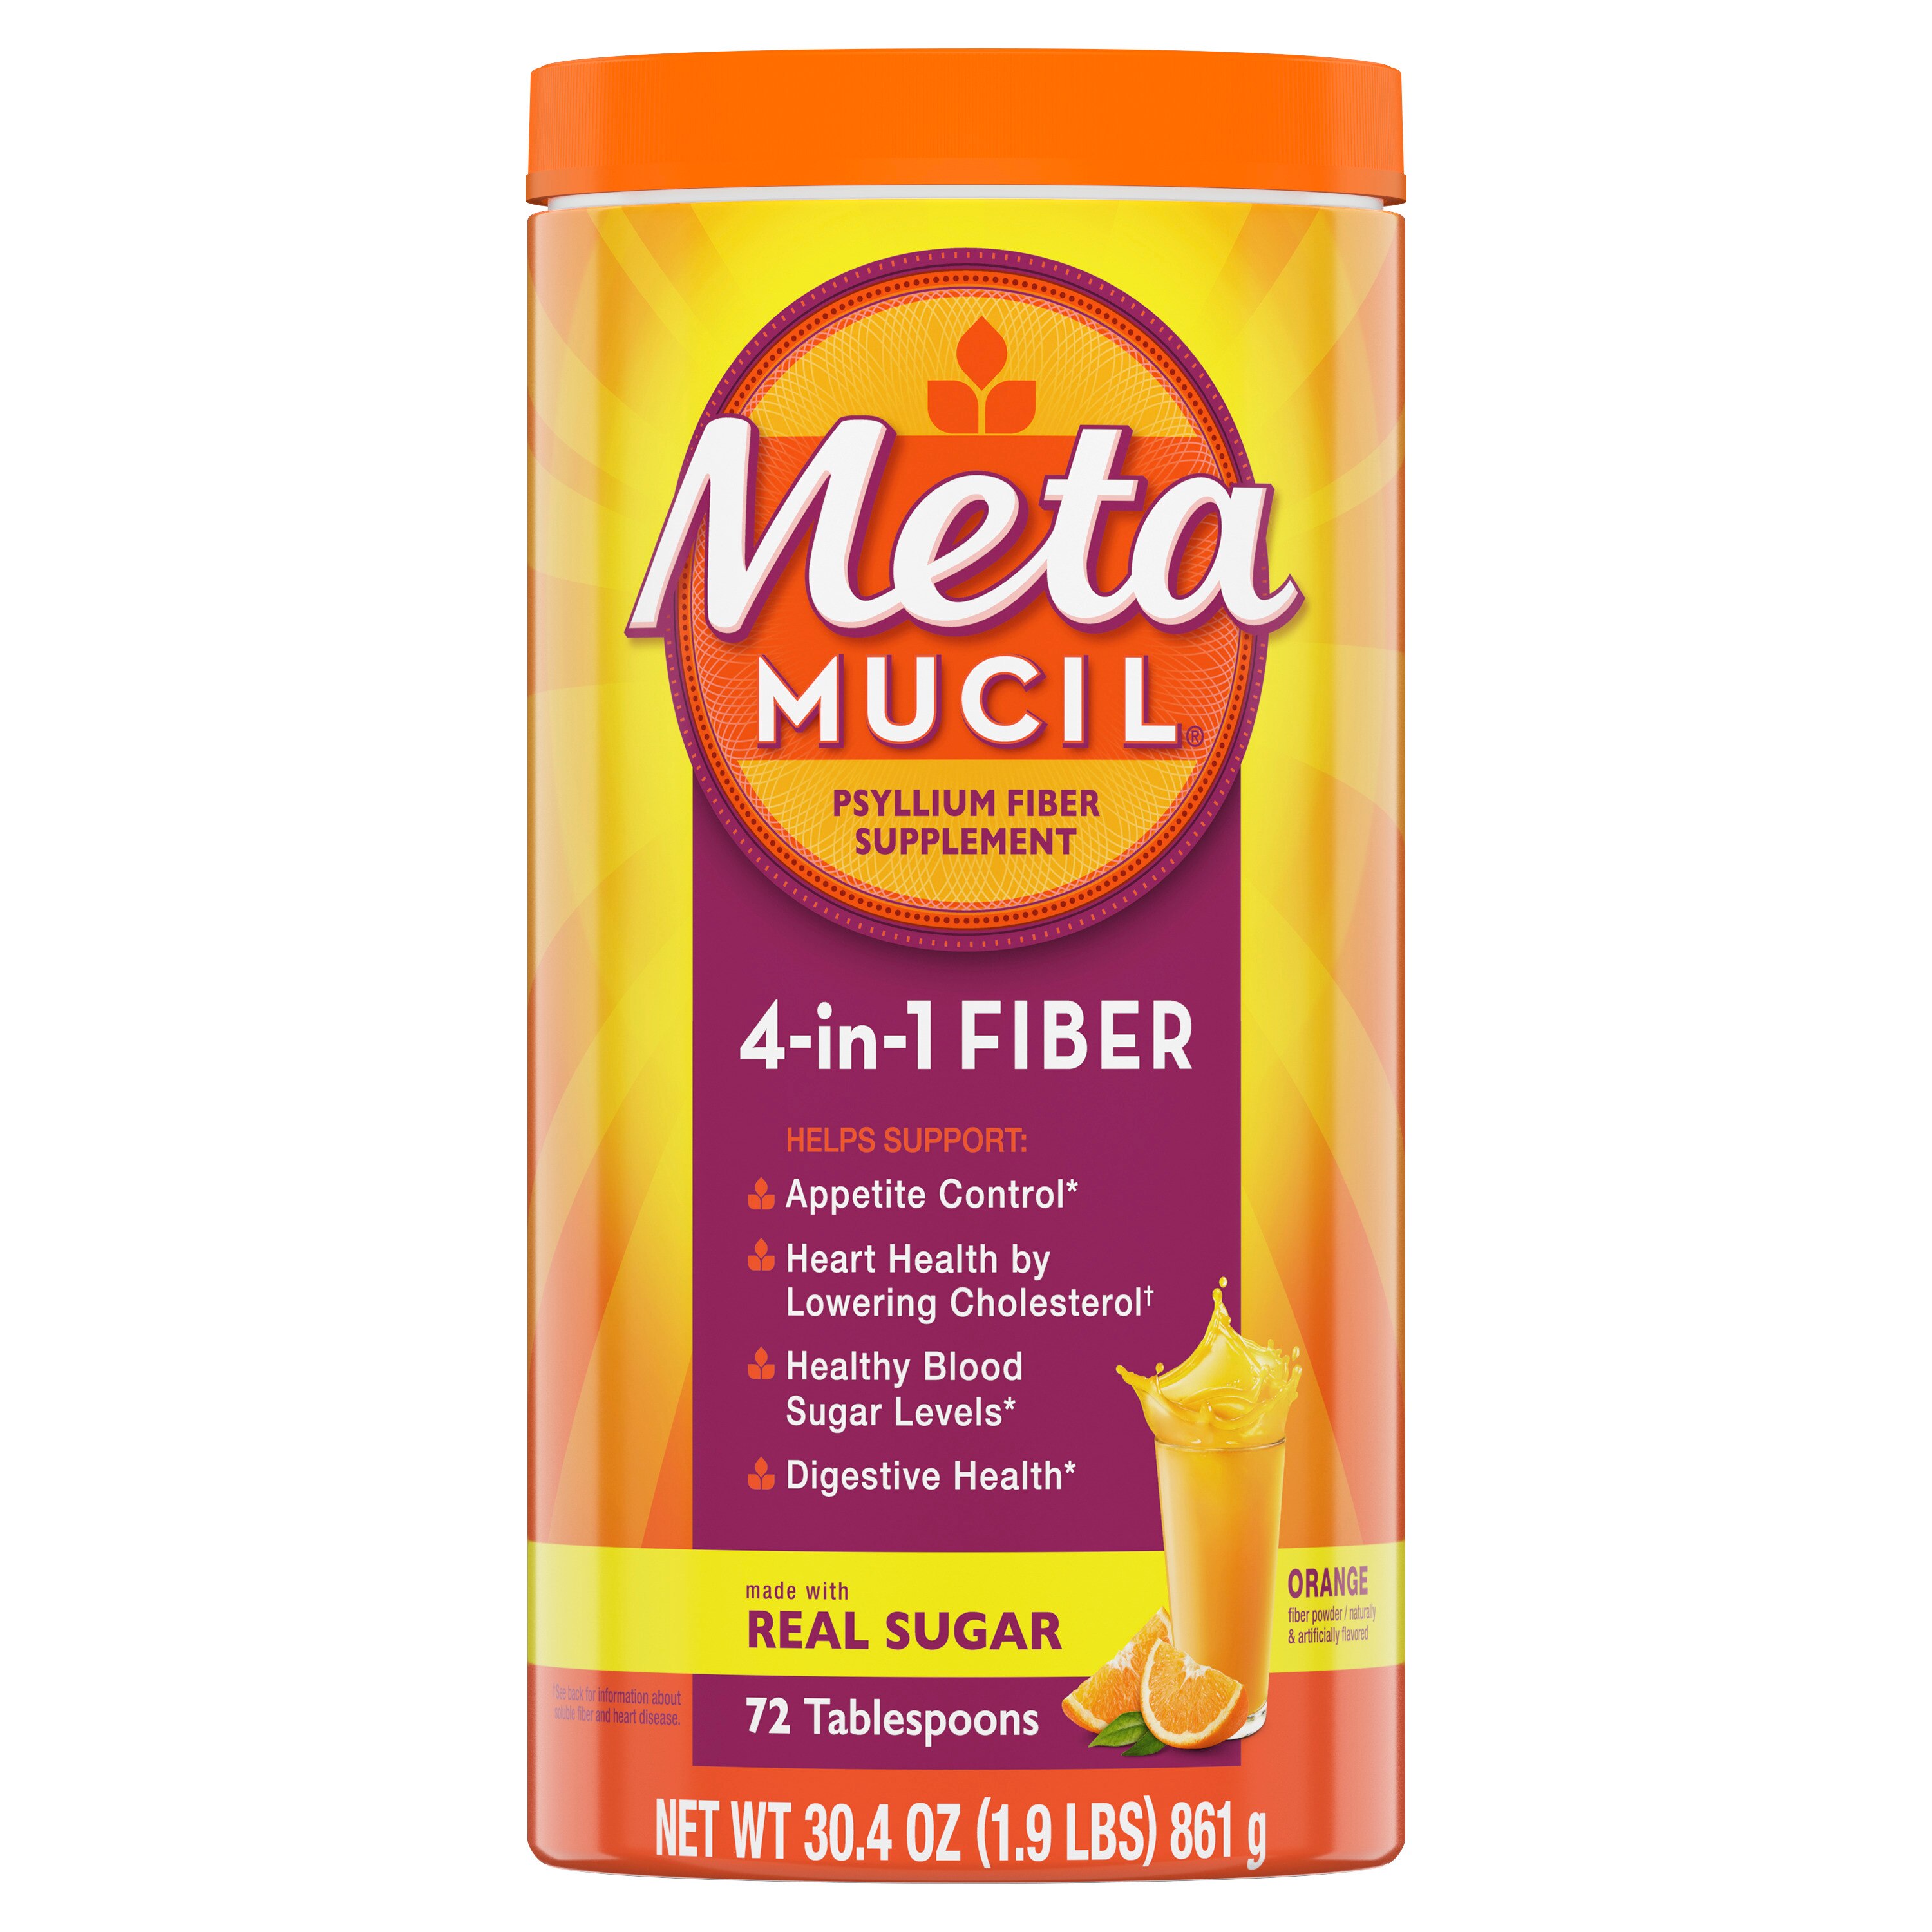 Metamucil 4-in-1 Psyllium Fiber Powder With Real Sugar, Orange, 72 Servings - 72DOSE , CVS